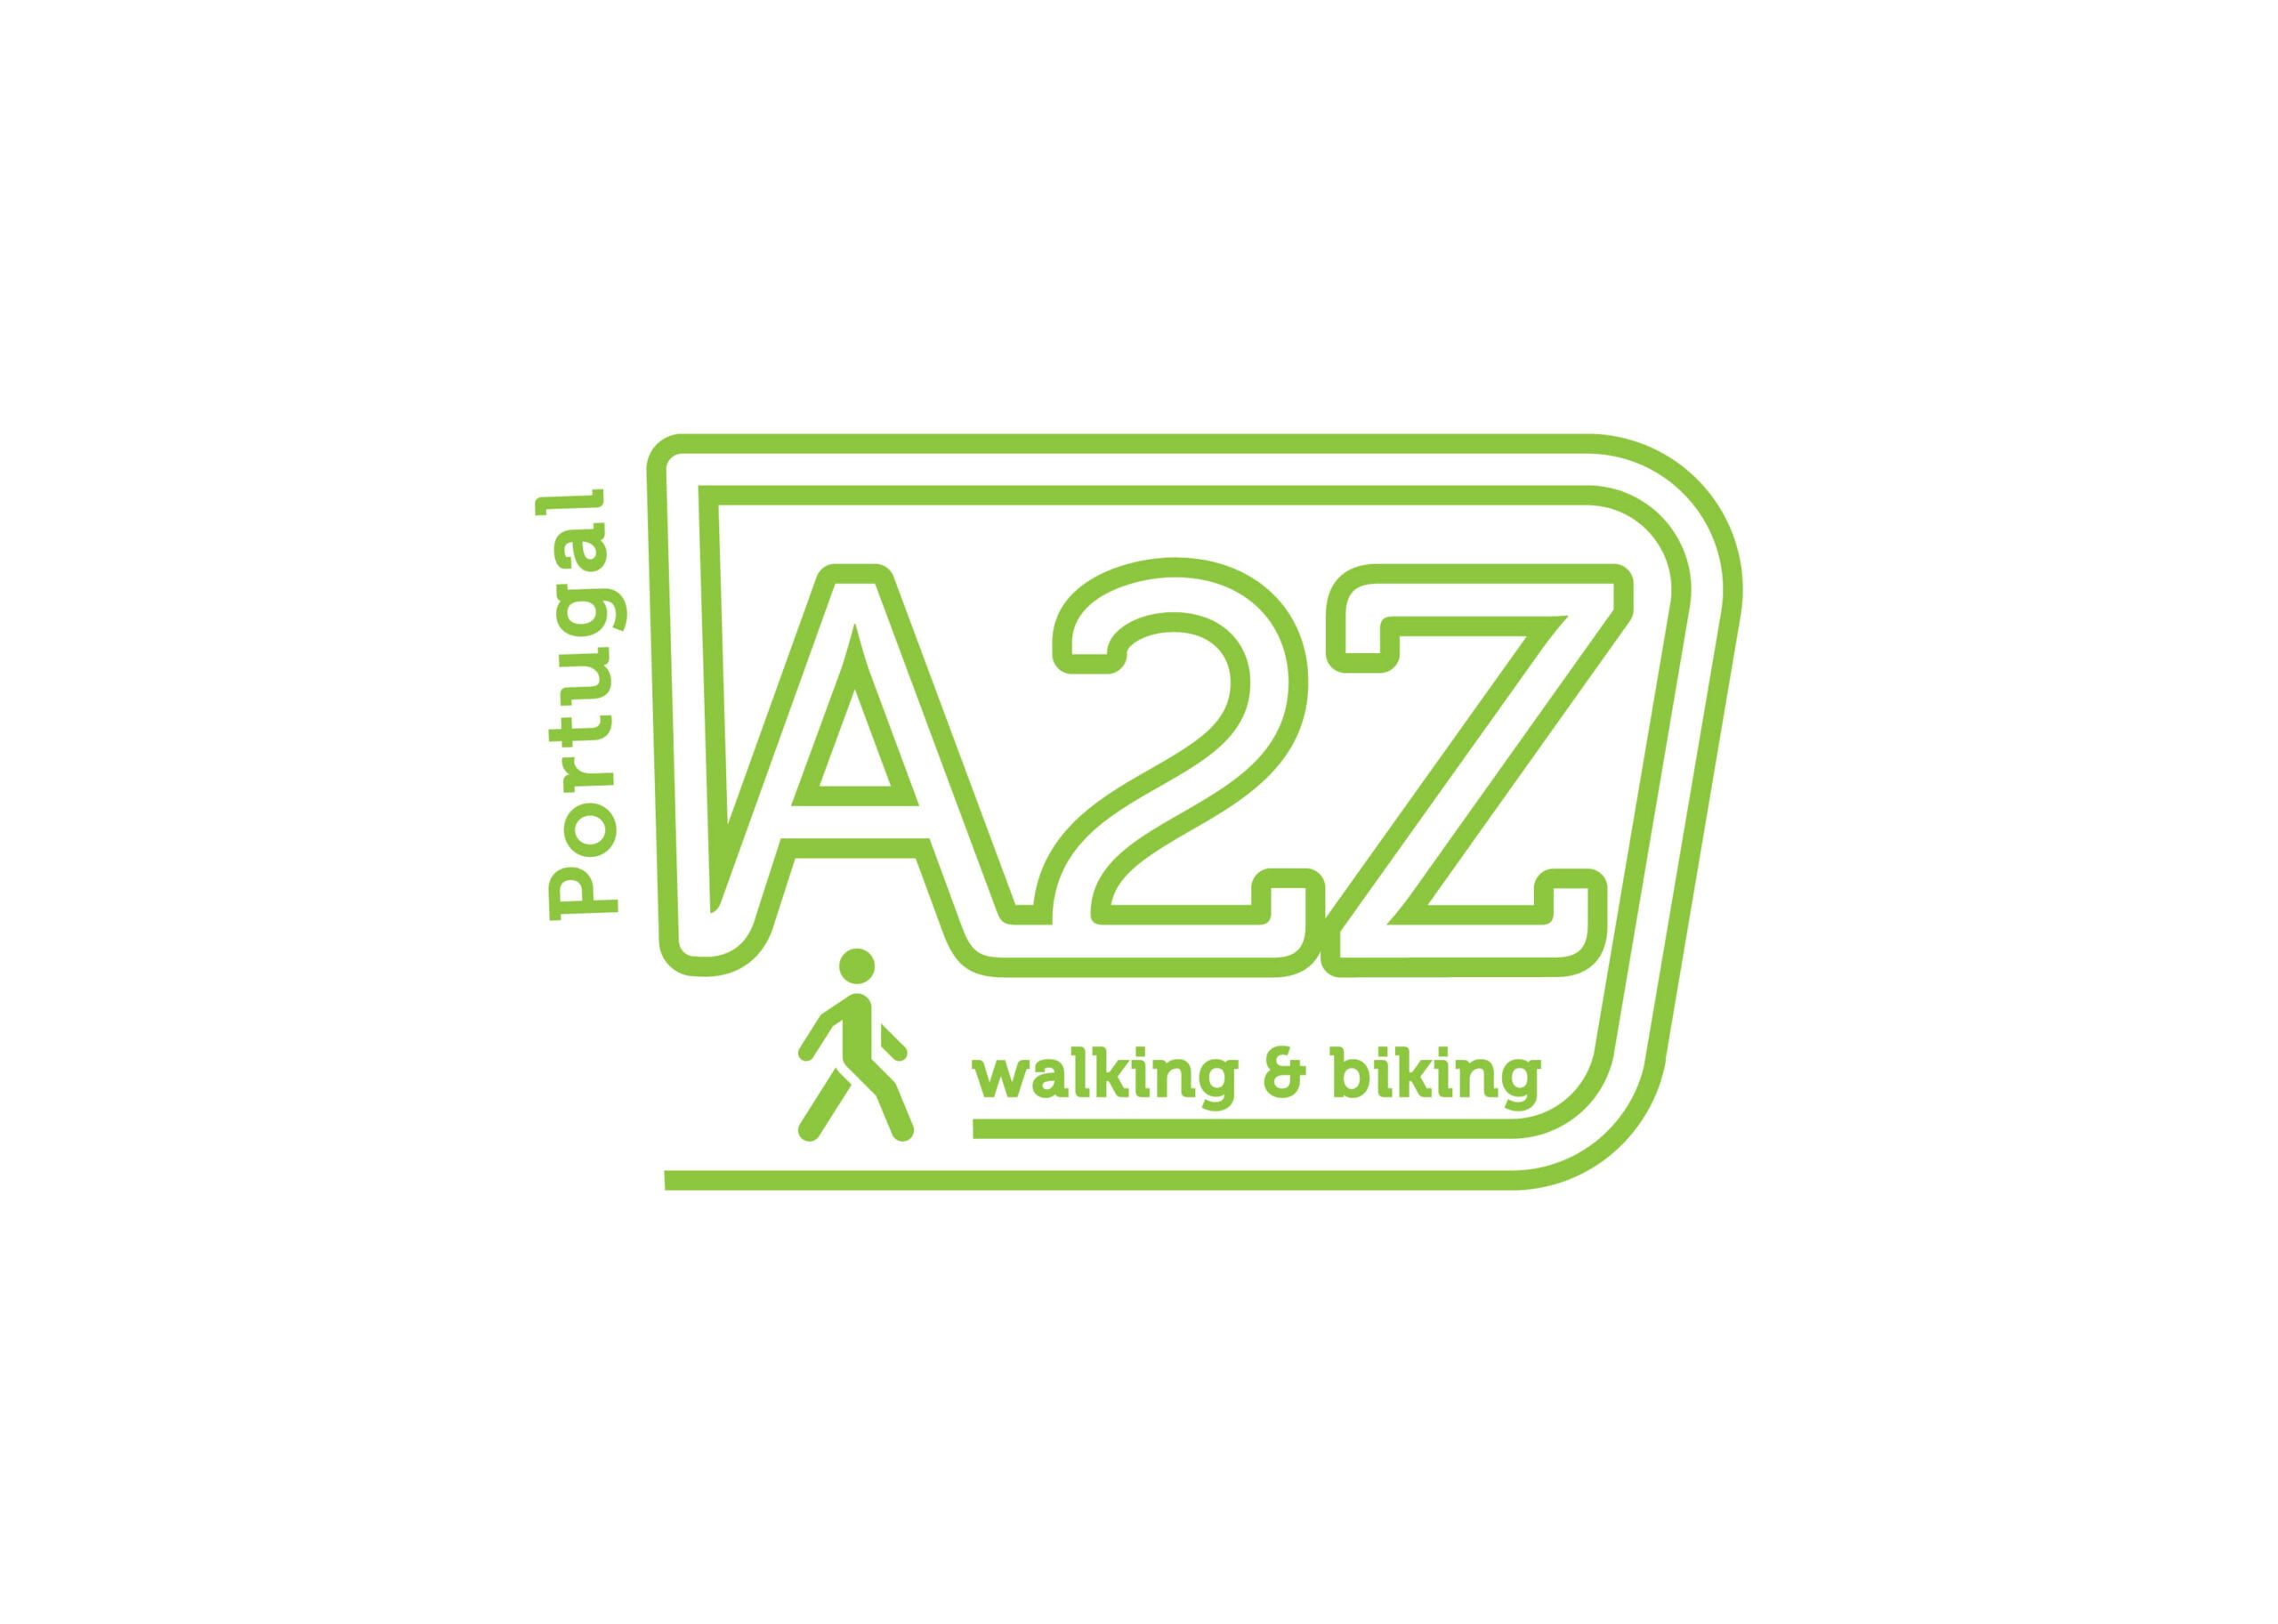 A2Z Portugal logo